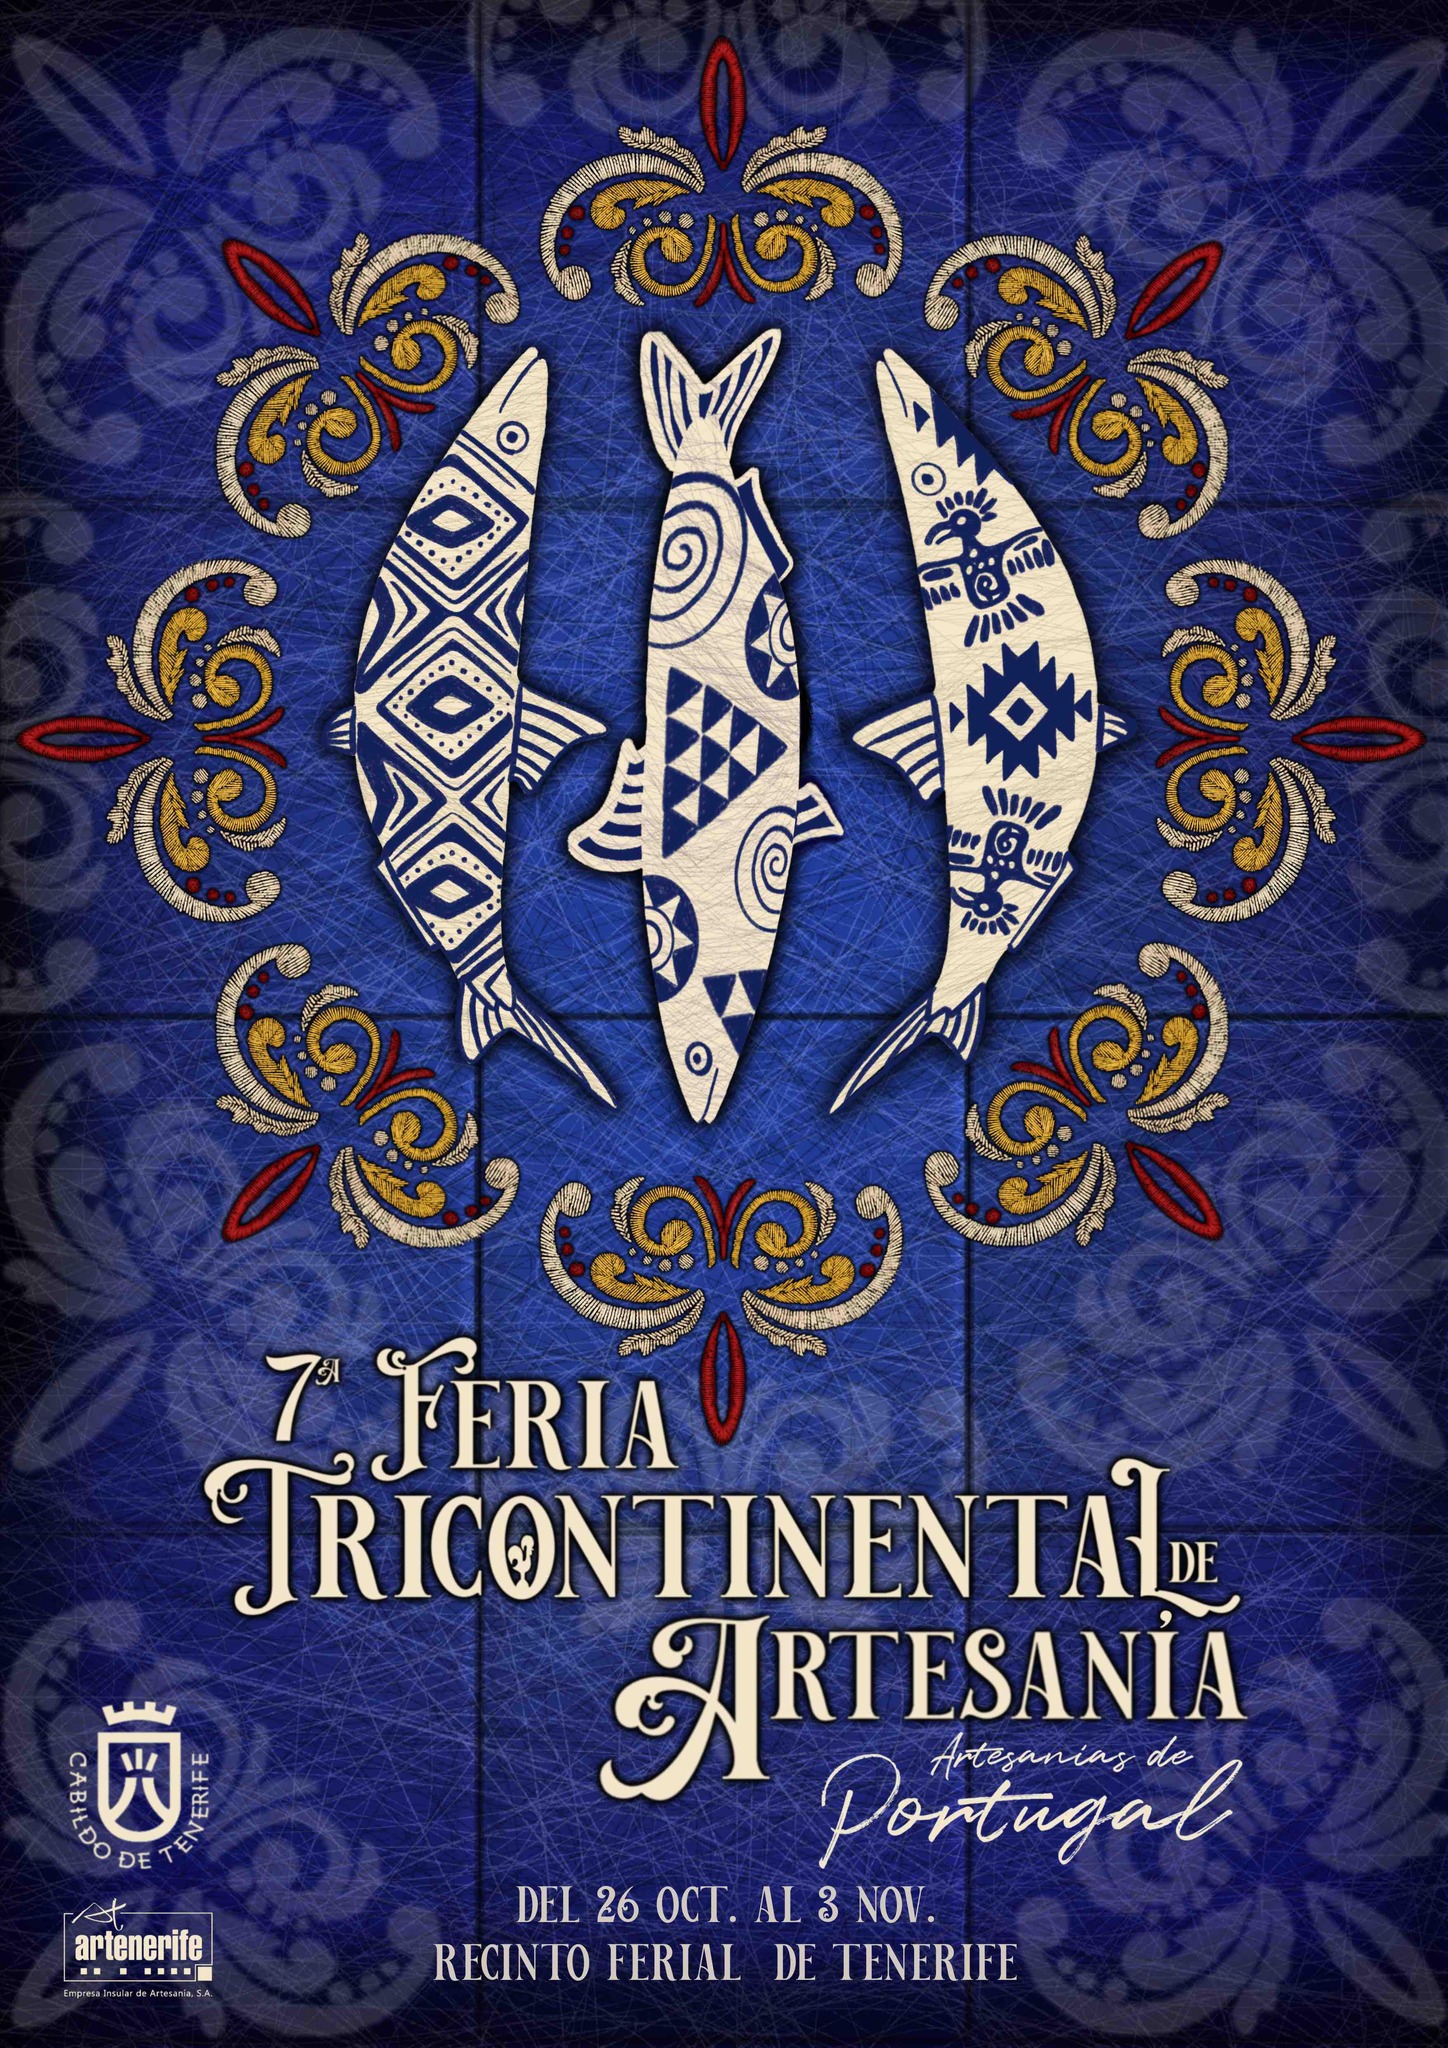 Cartel anunciador de la séptima Feria Tricontinental der Artesanía